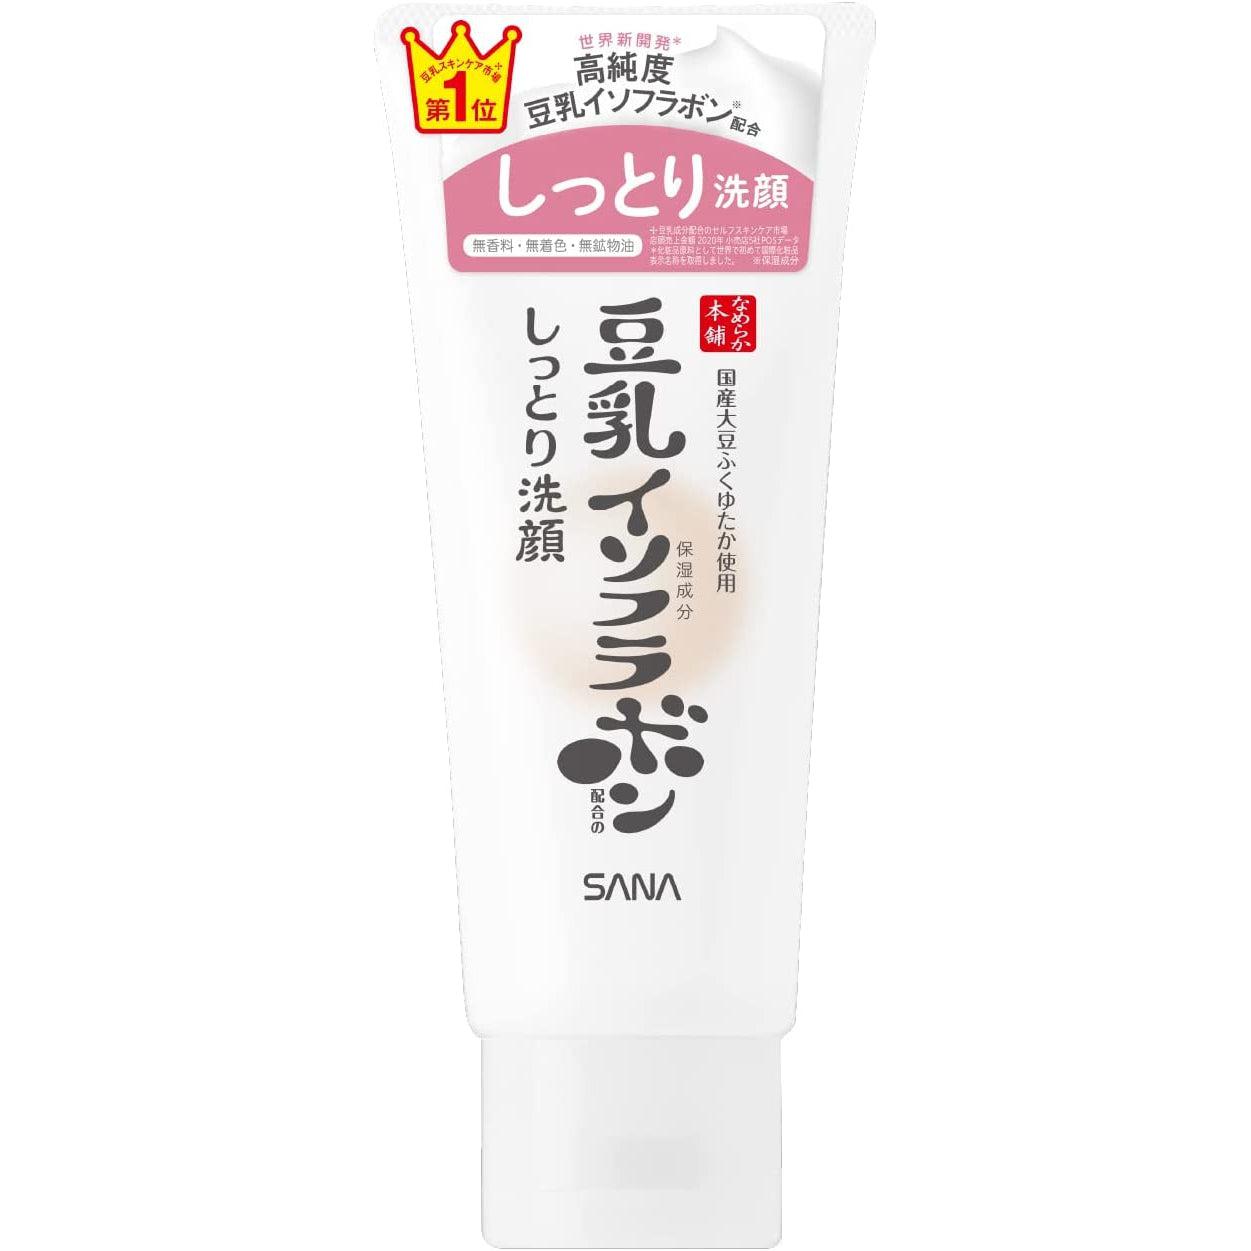 Sana Nameraka Honpo Soy Milk Isoflavone Foaming Cleanser for Dry Skin 150g